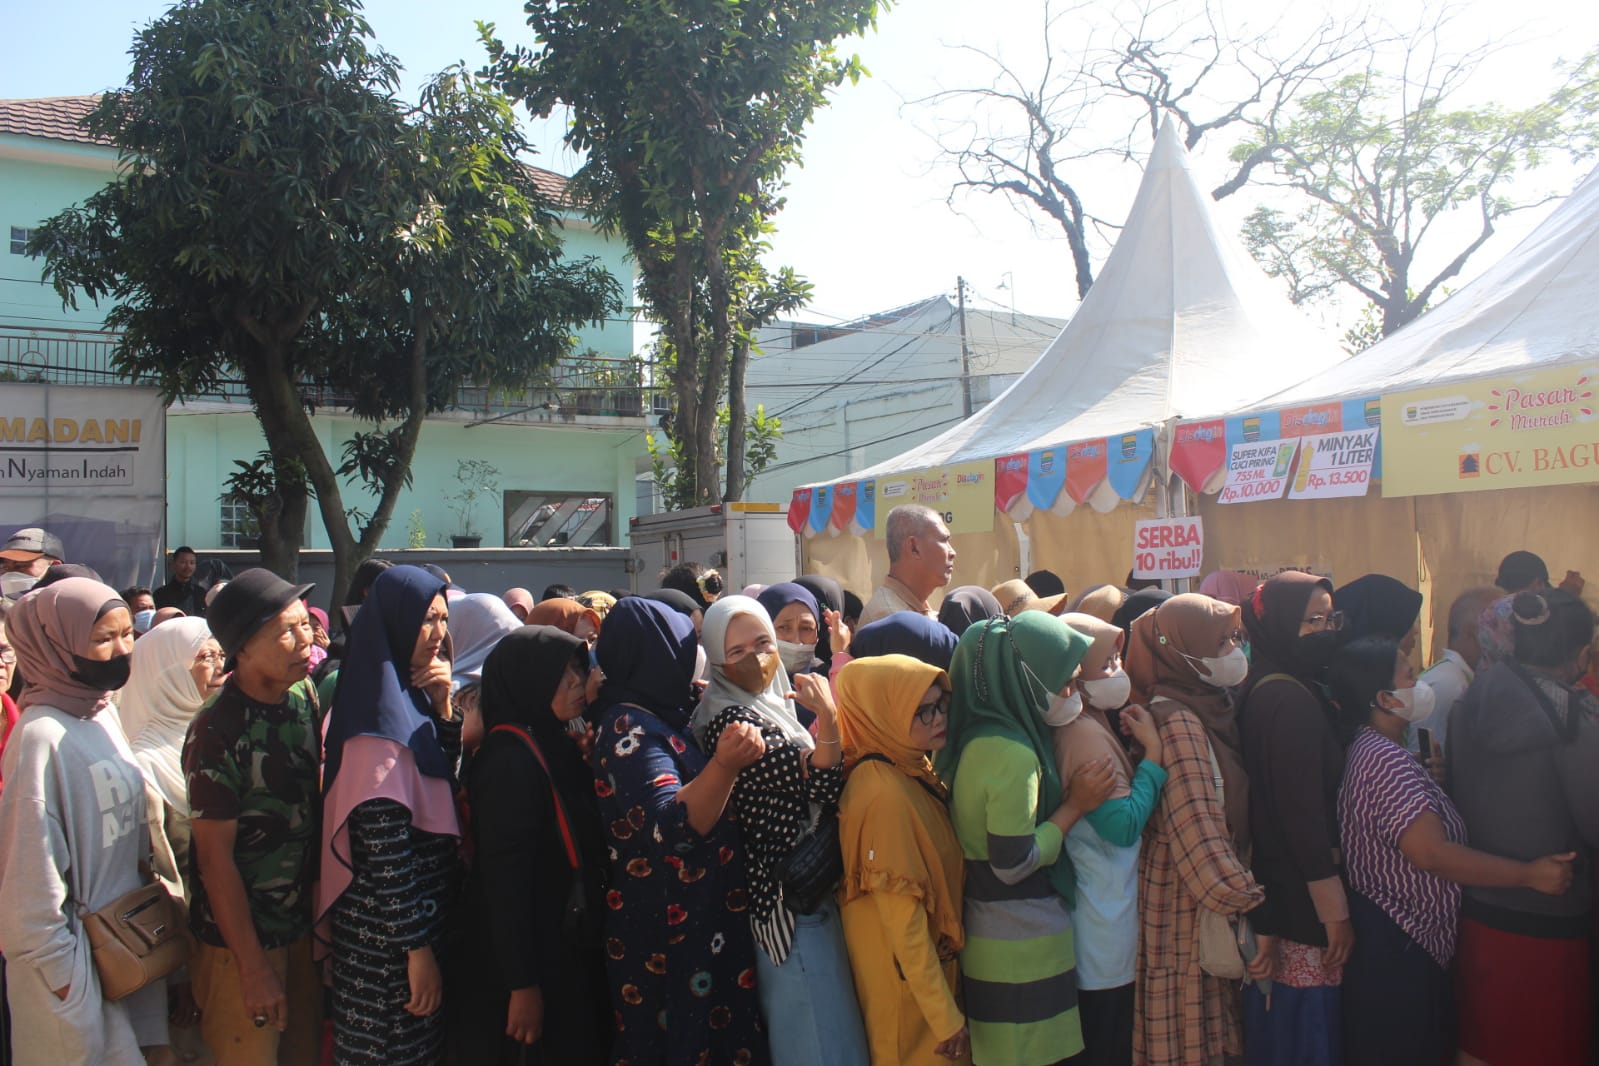 Antusiasme warga Kecamatan Rancasari, pada kegiatan pasar murah yang di gelar oleh pemerintah Kota Bandung. (SADAM HUSEN SOLEH RAMDHANI/JABAR EKSPRES)